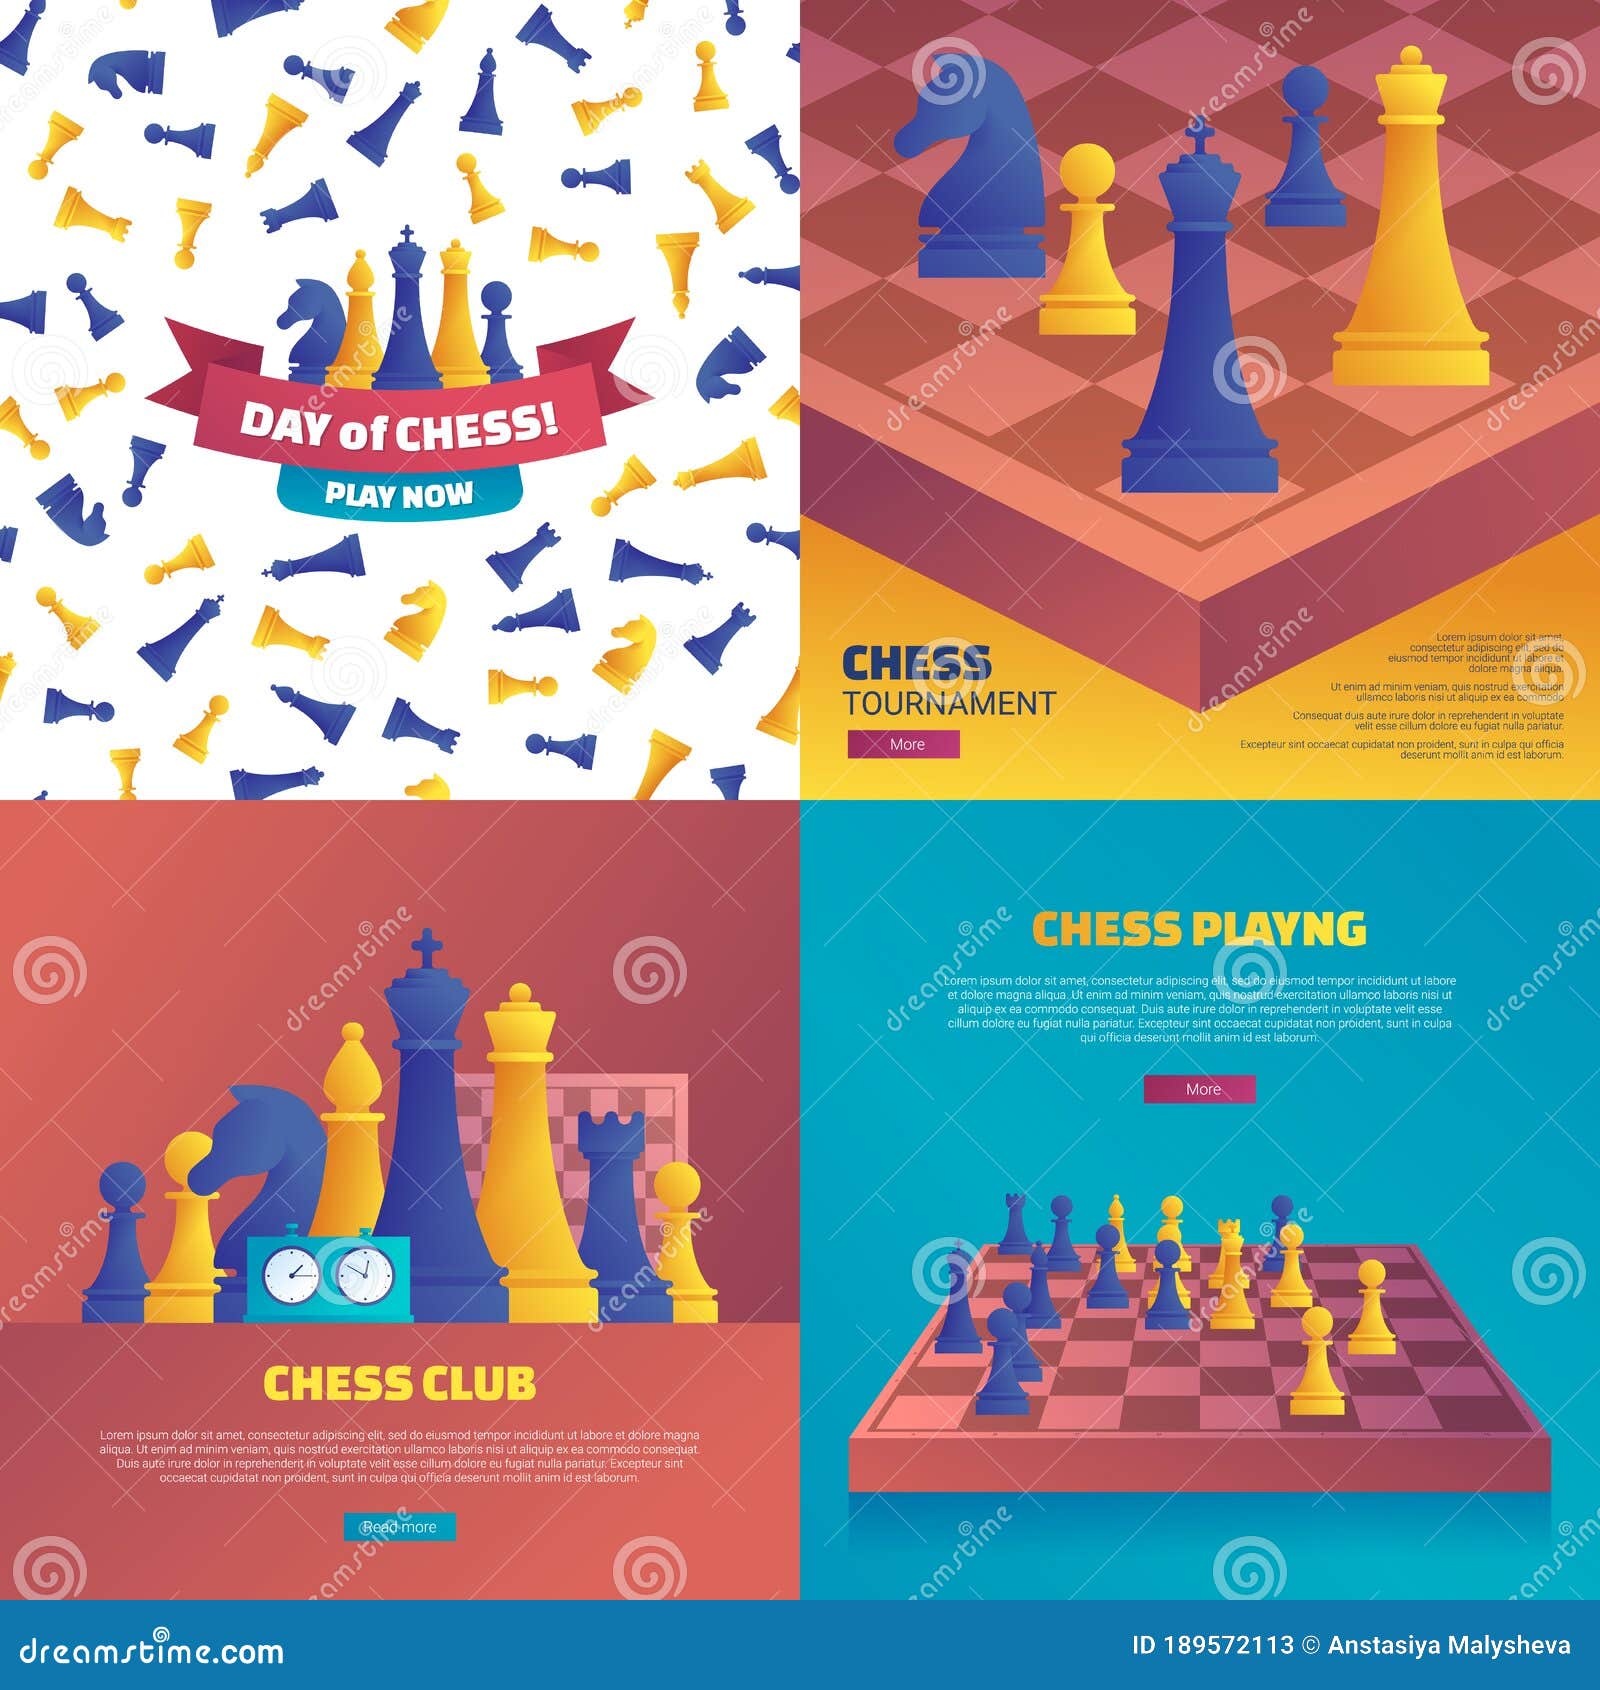 Clube de Xadrez- Peão Passado - club de xadrez 